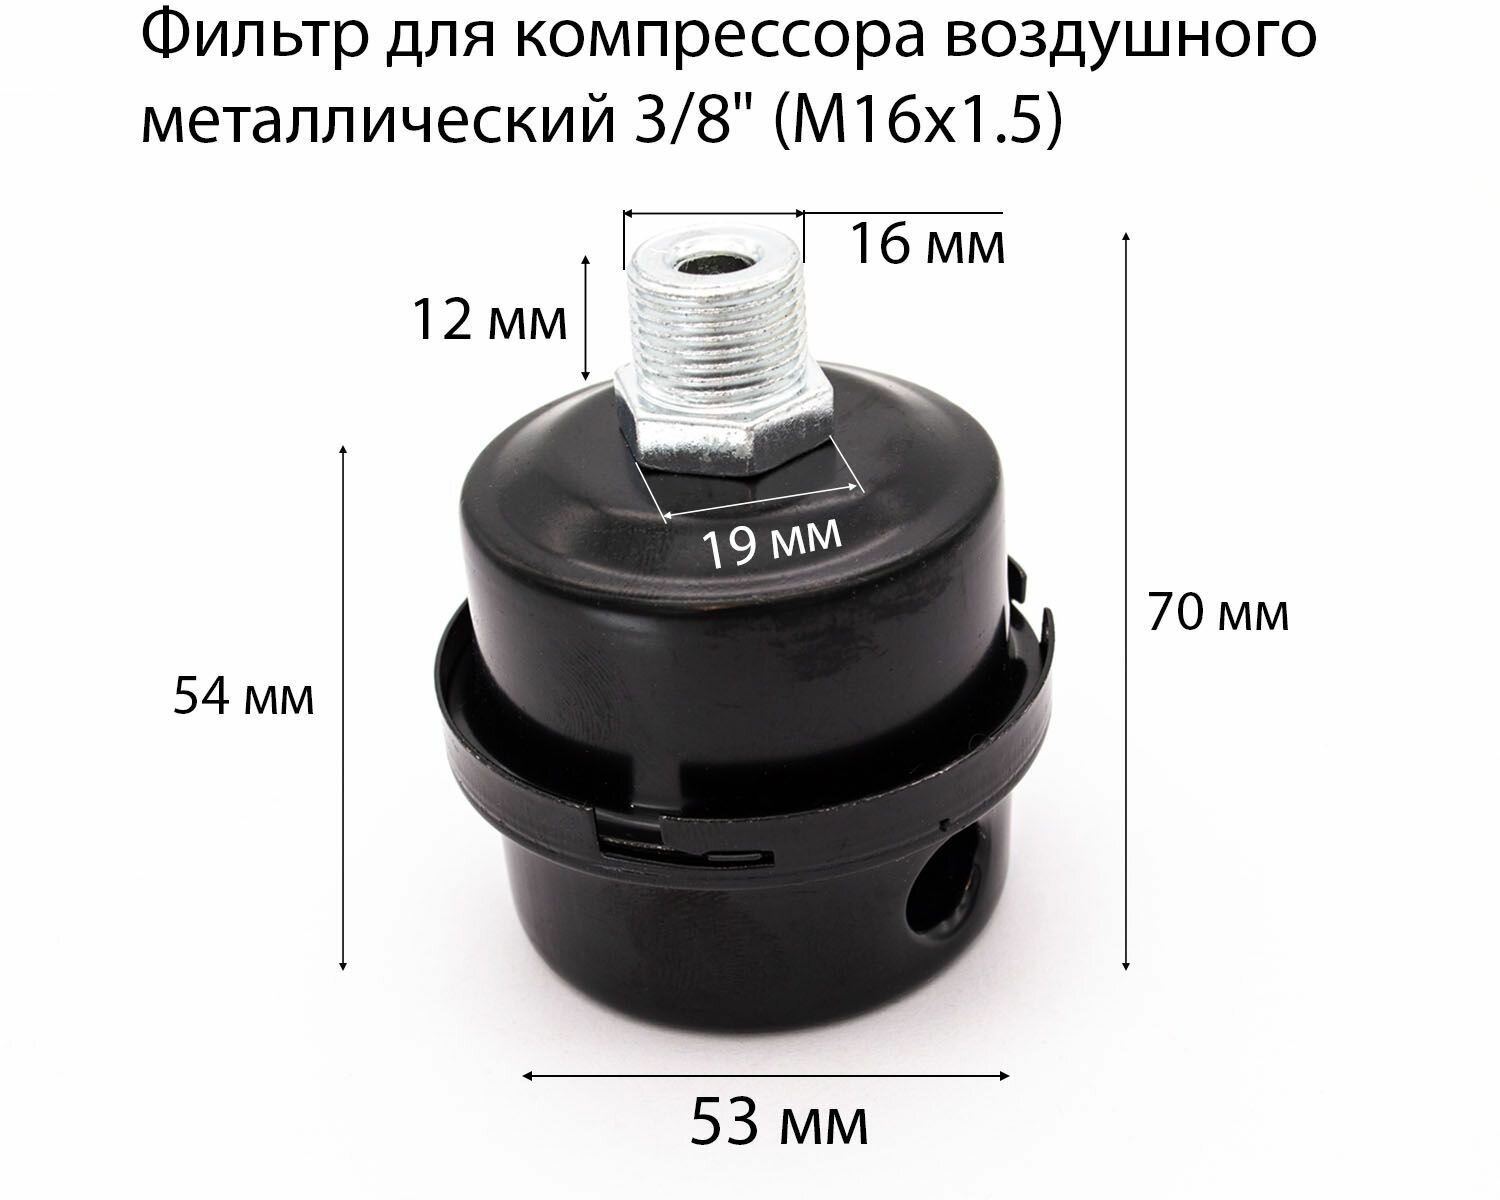 Фильтр для компрессора воздушного металлический 3/8" (M16х1.5)